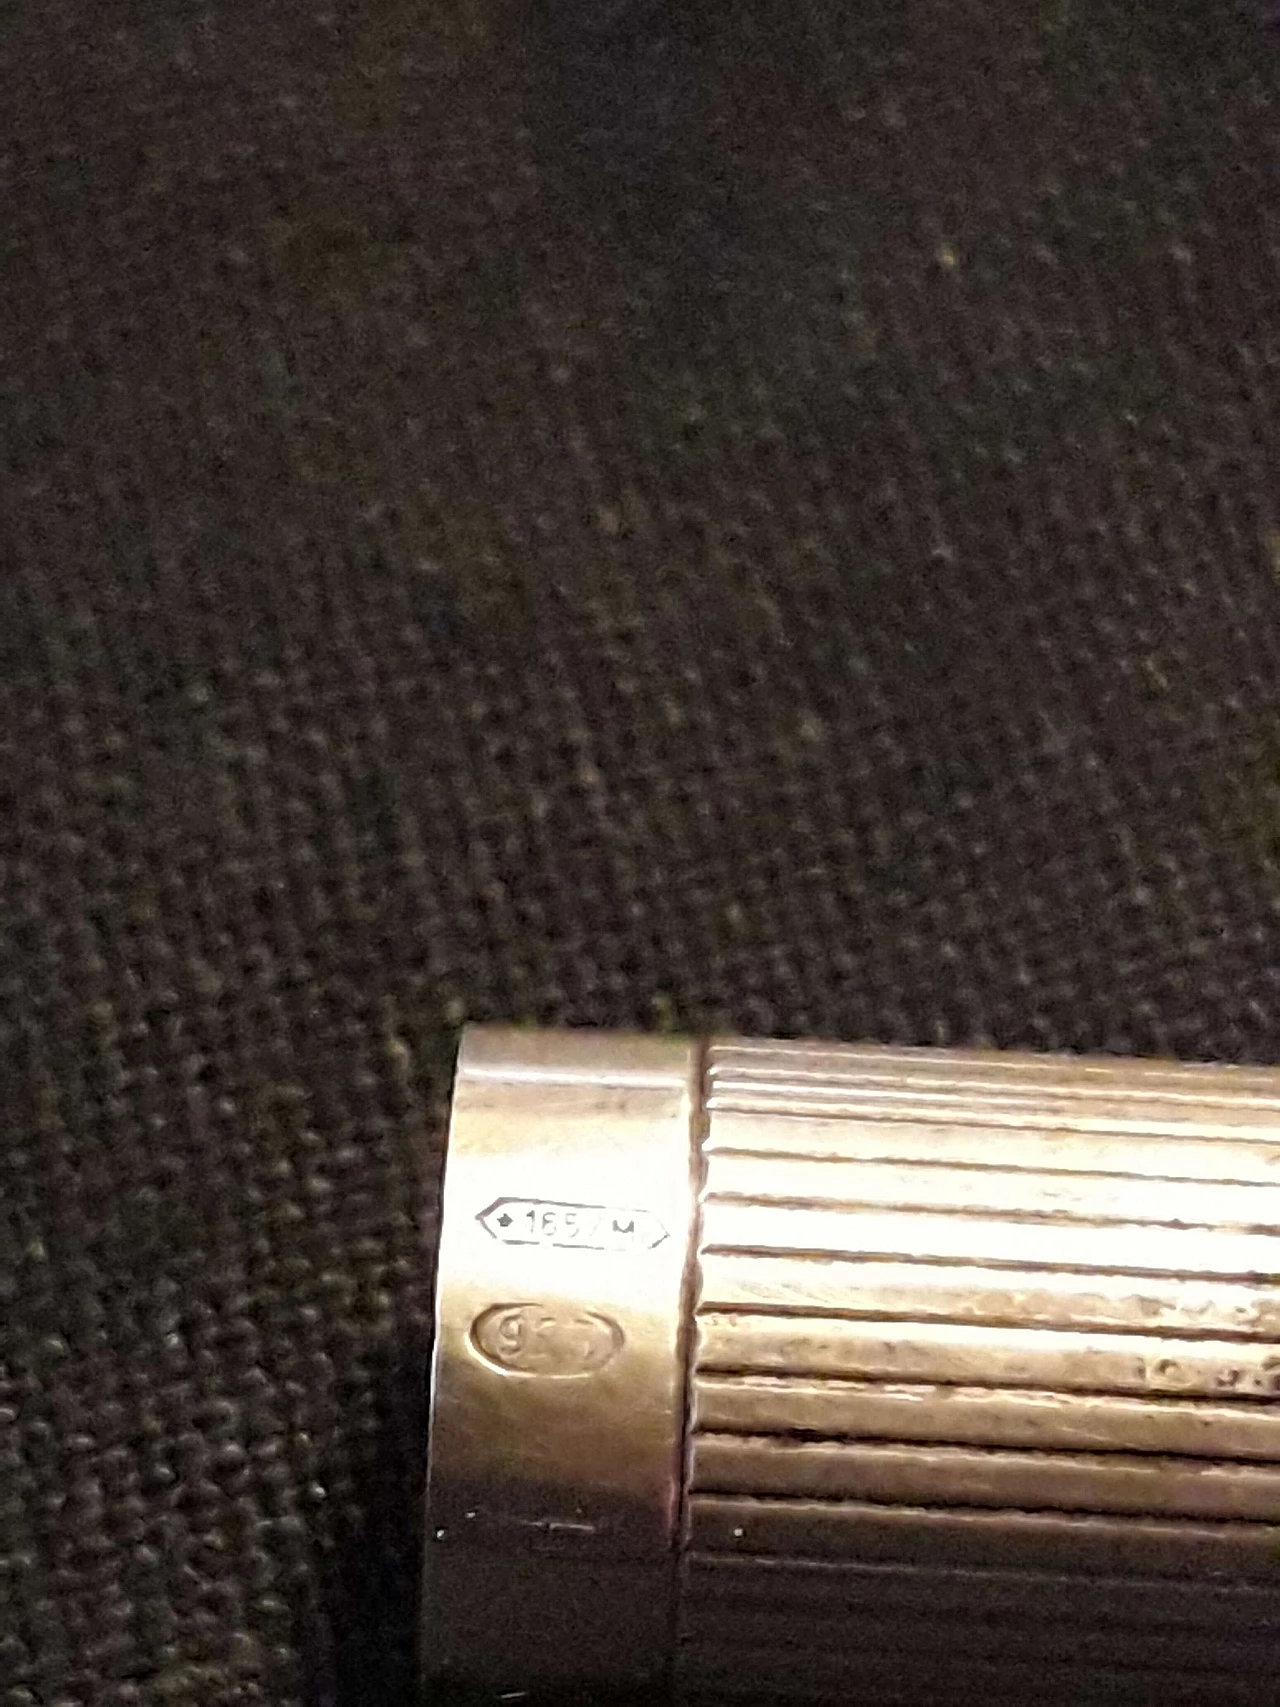 Ferrari silver stylographic pen 1177961